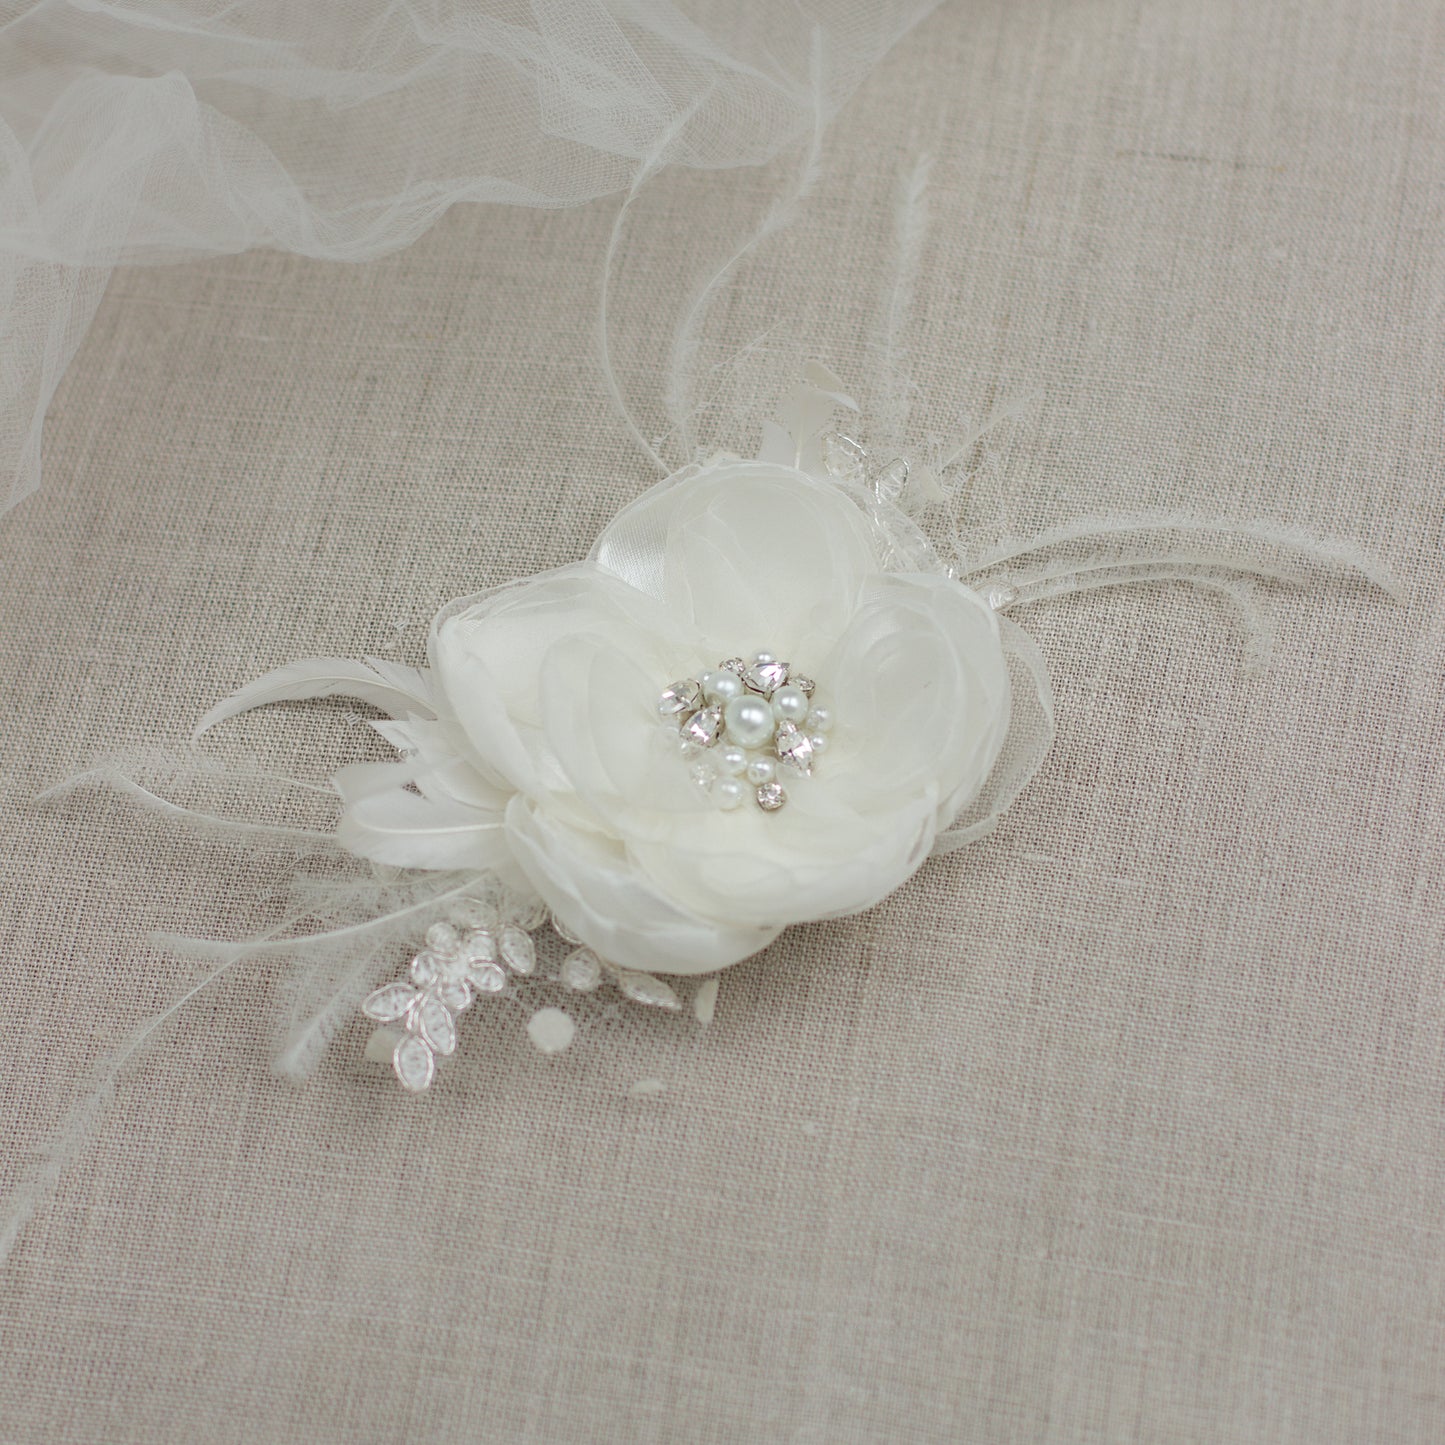 Ivory Wedding hair flower, Bridal hair flower, Bridal hair piece,Flower hair clip,Bride hair accessory, Flower fascinator, Wedding hairpiece